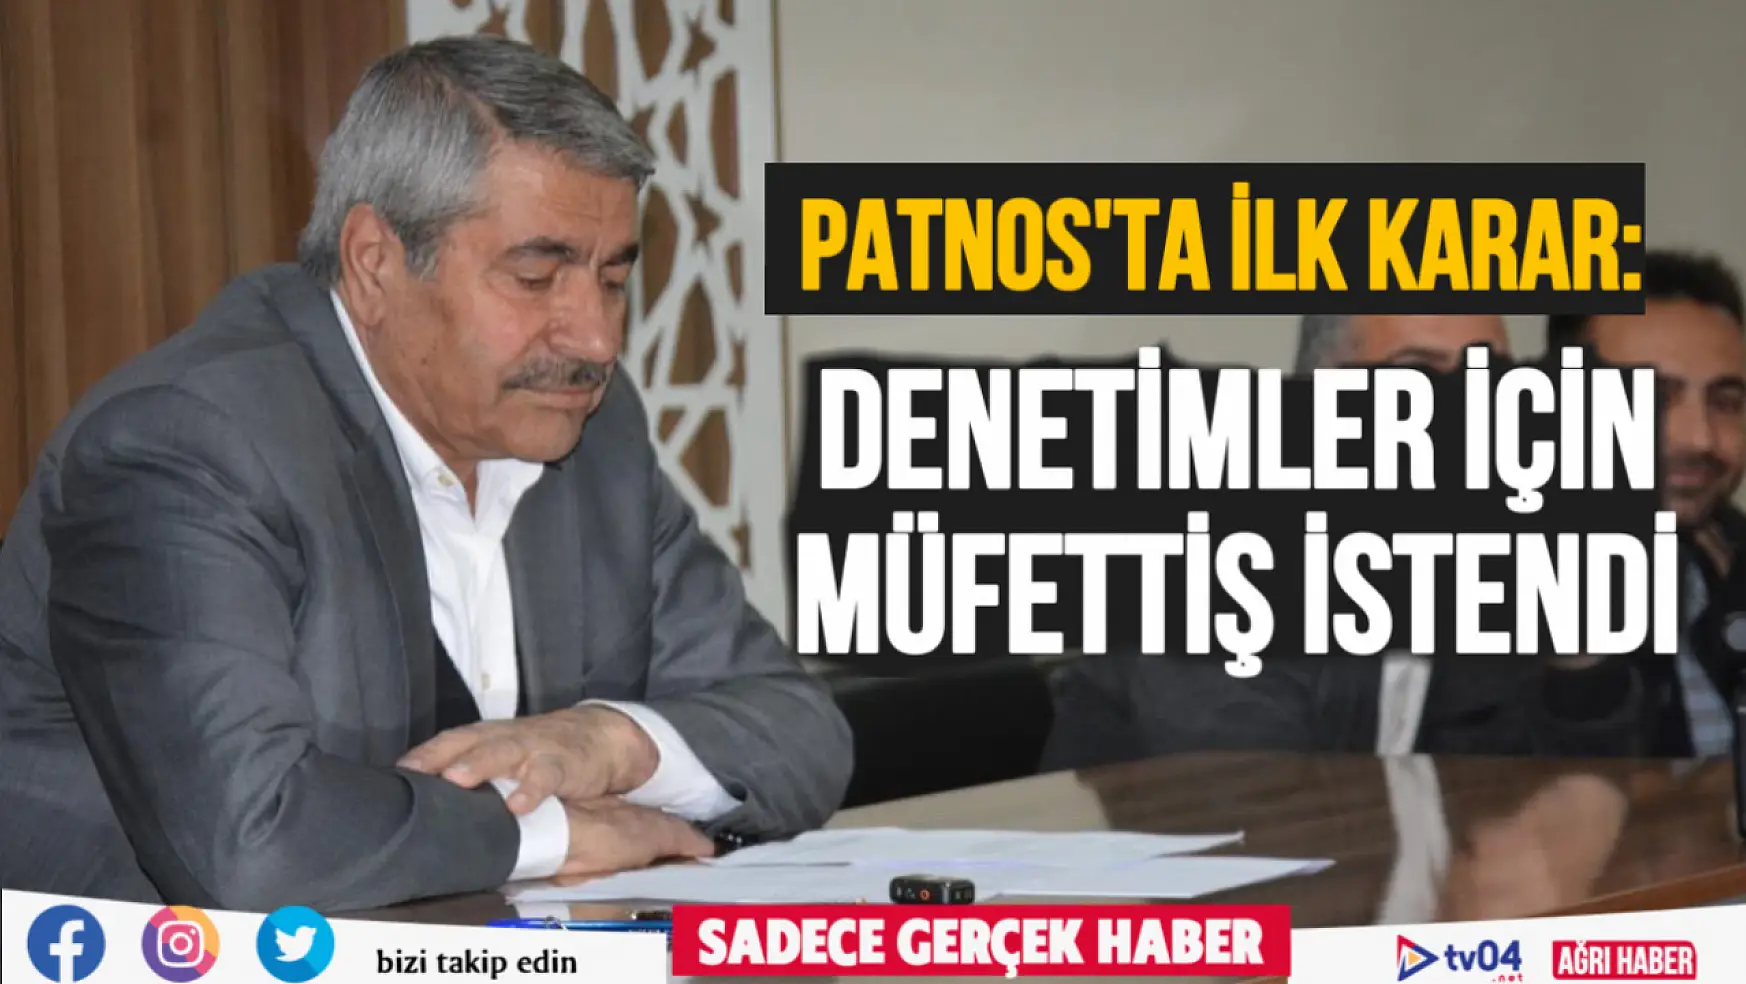 Patnos Belediyesi geçmiş dönem için müfettiş istedi